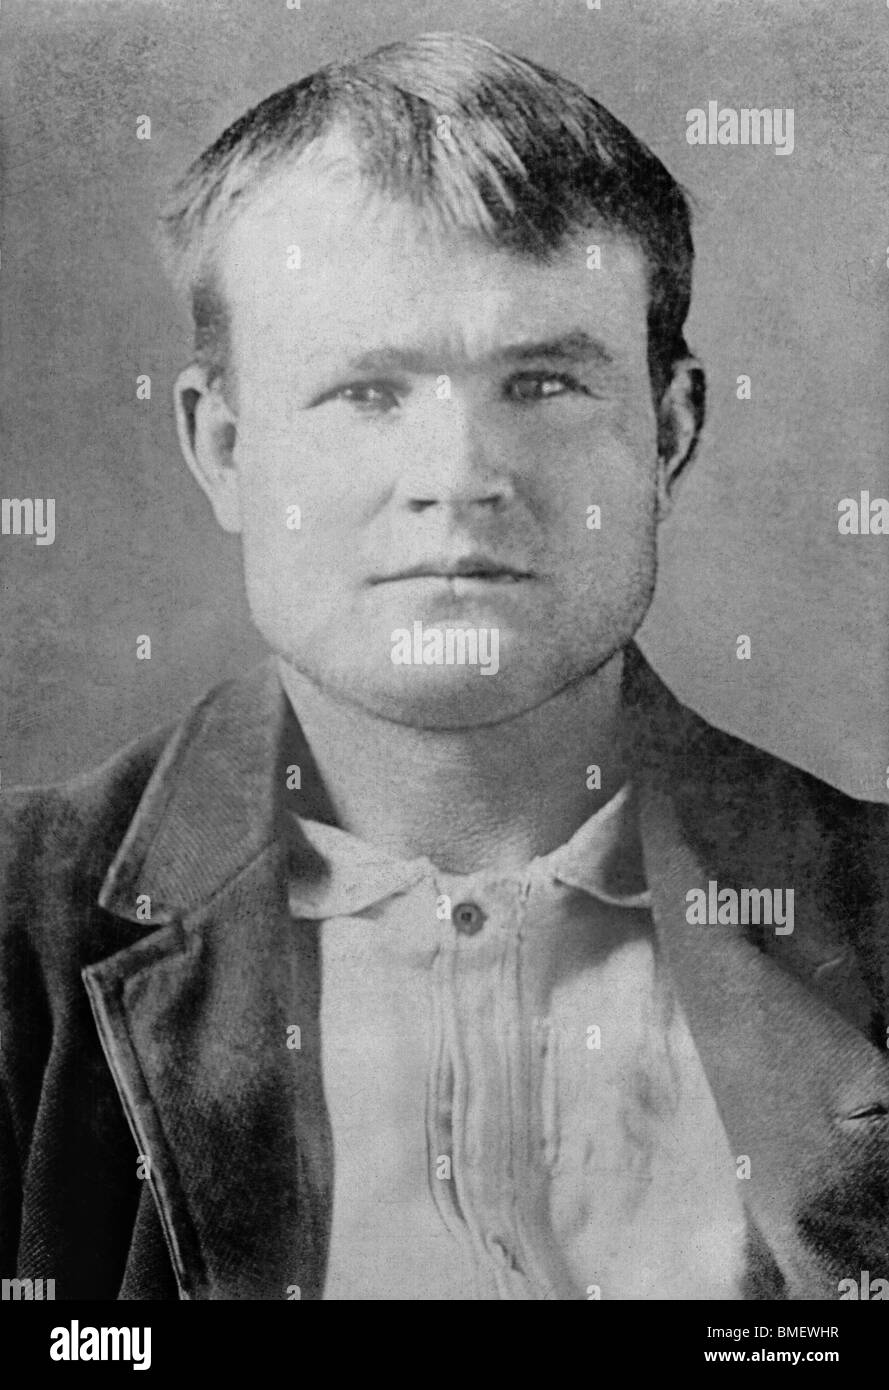 Vintage prigione foto c1893 del famigerato fuorilegge americano Butch Cassidy (1866 - c1908), vero nome Robert LeRoy Parker. Foto Stock